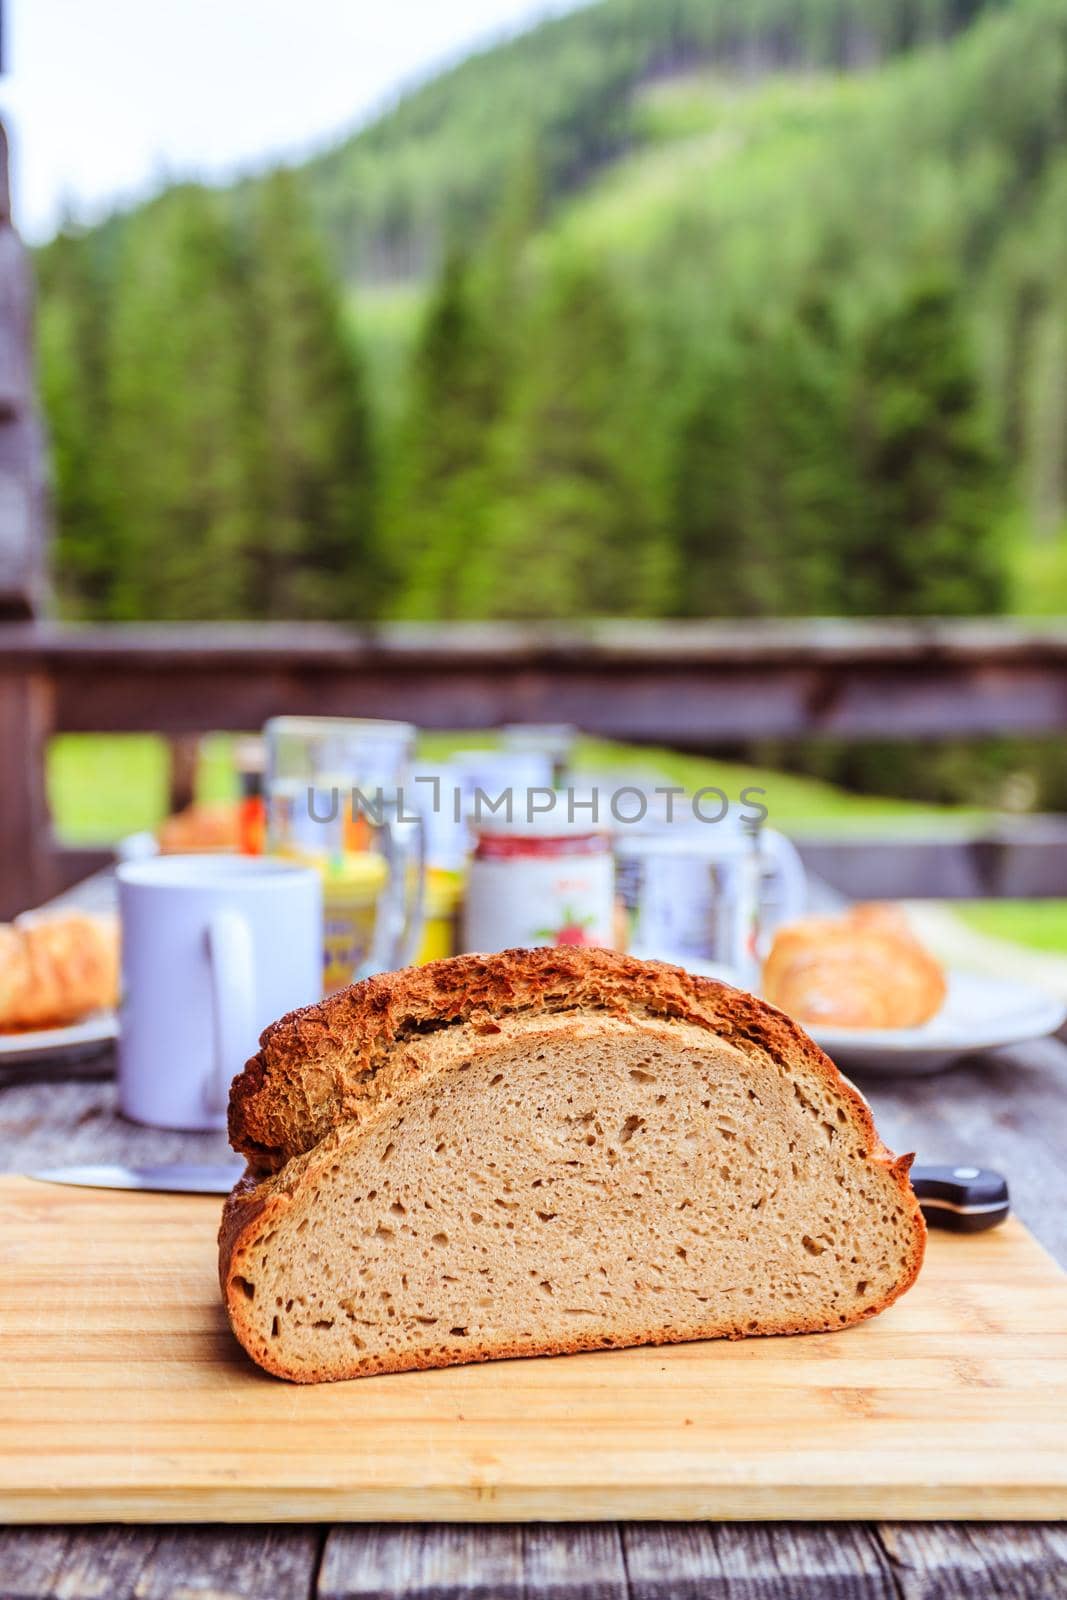 Fresh dark crisp bread for breakfast on an alpine hut. Wooden cutting board and milk in glass bottle.